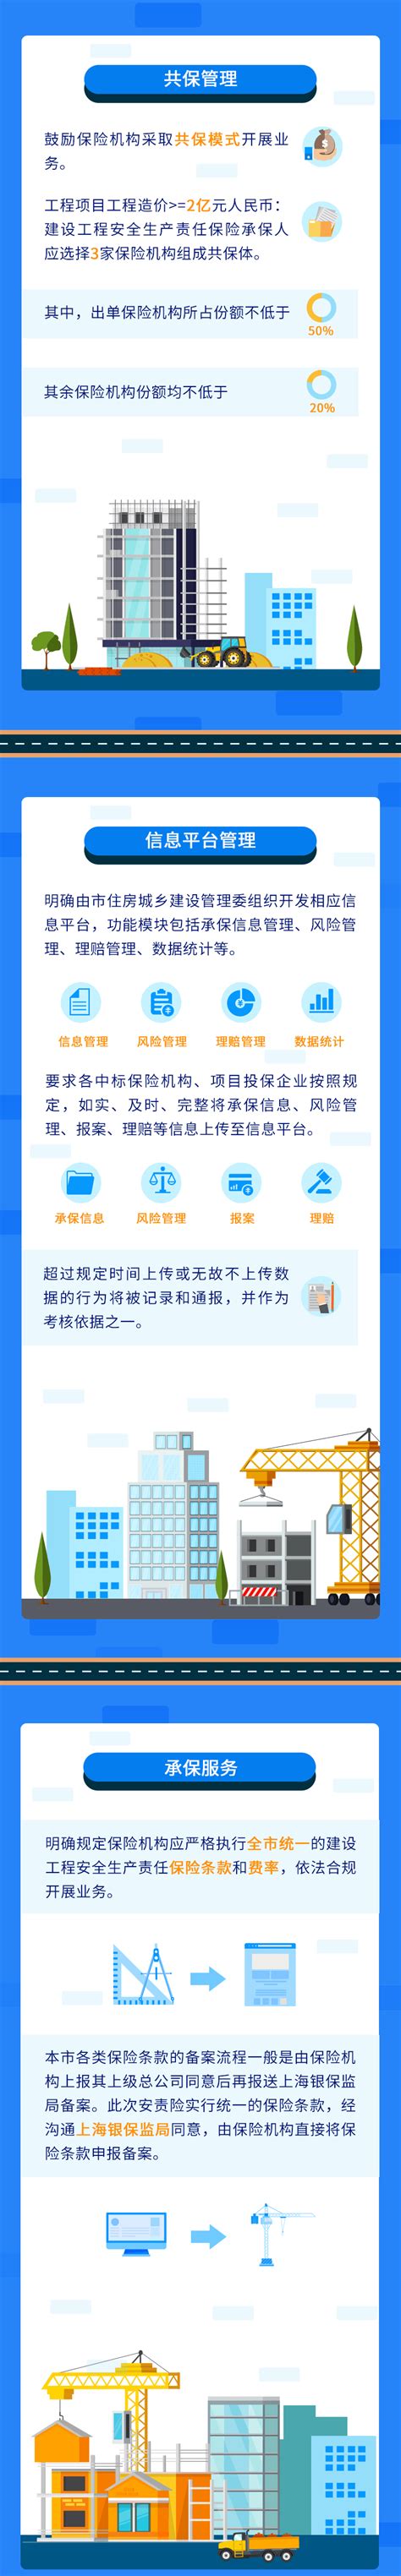 上海市建设工程安全技术监督局